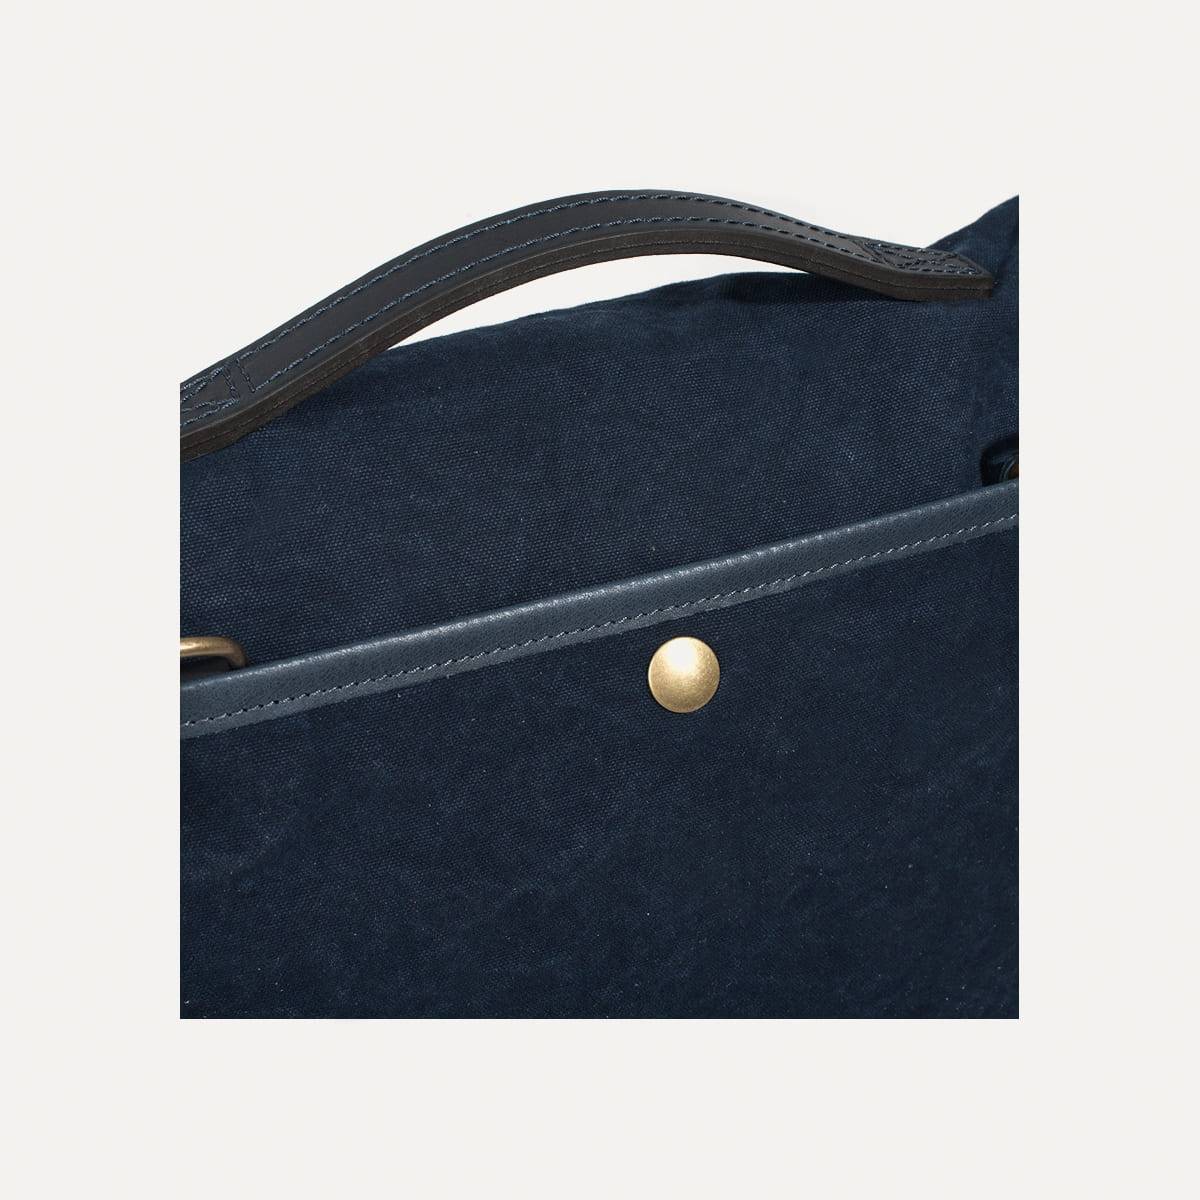 Gaston tool bag - Ecru I Messenger Bag I Made in France